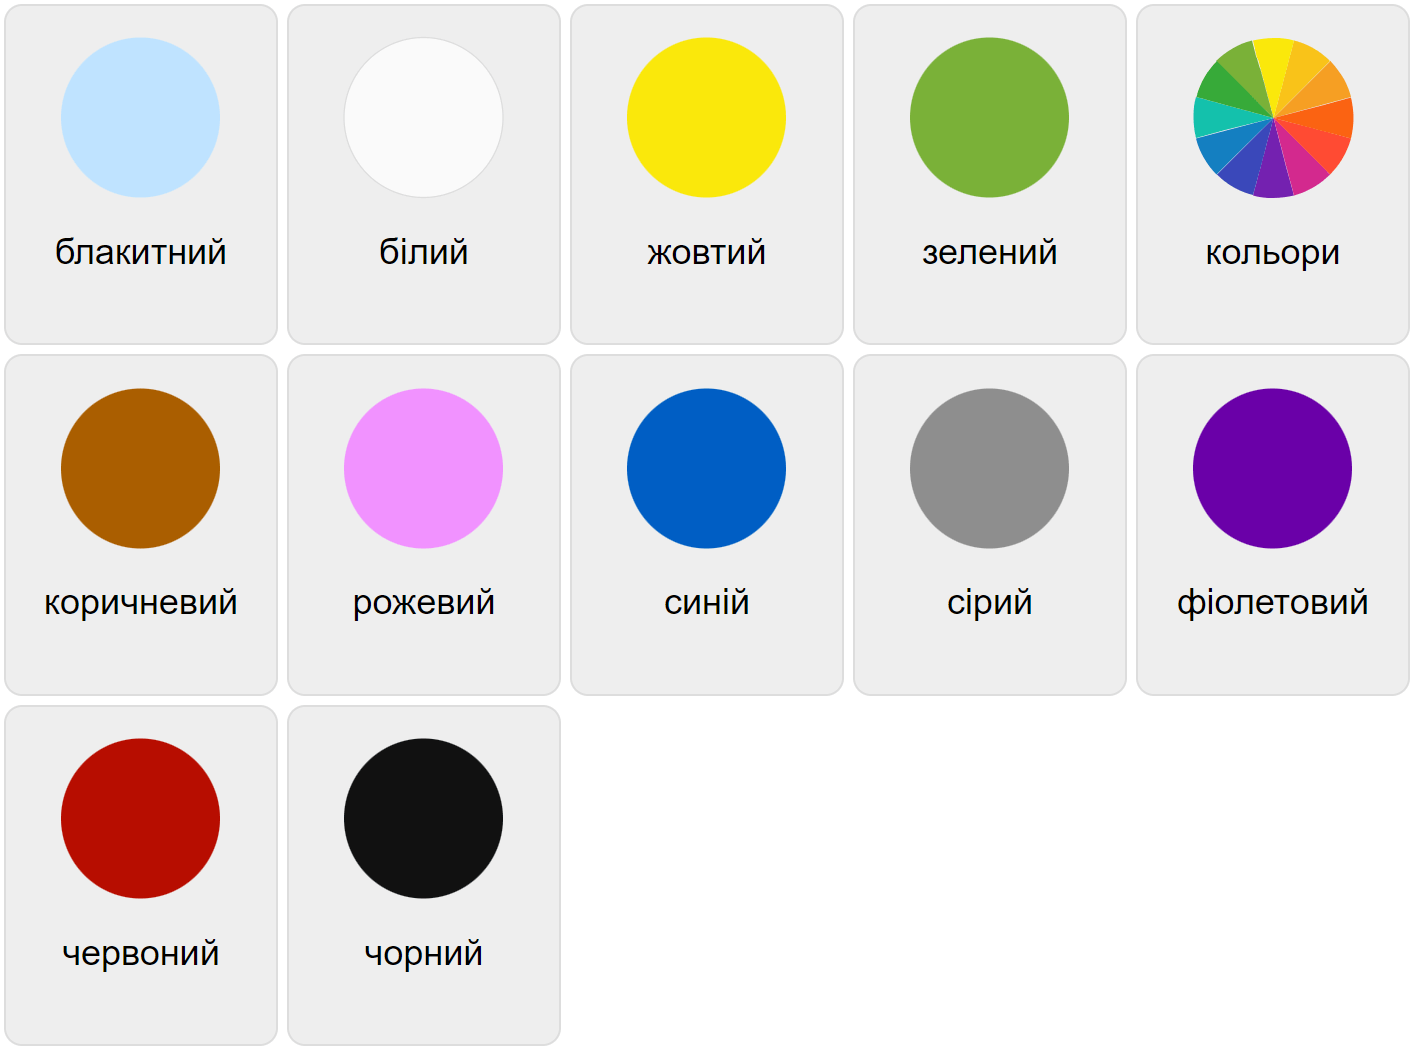 Colores en ucraniano